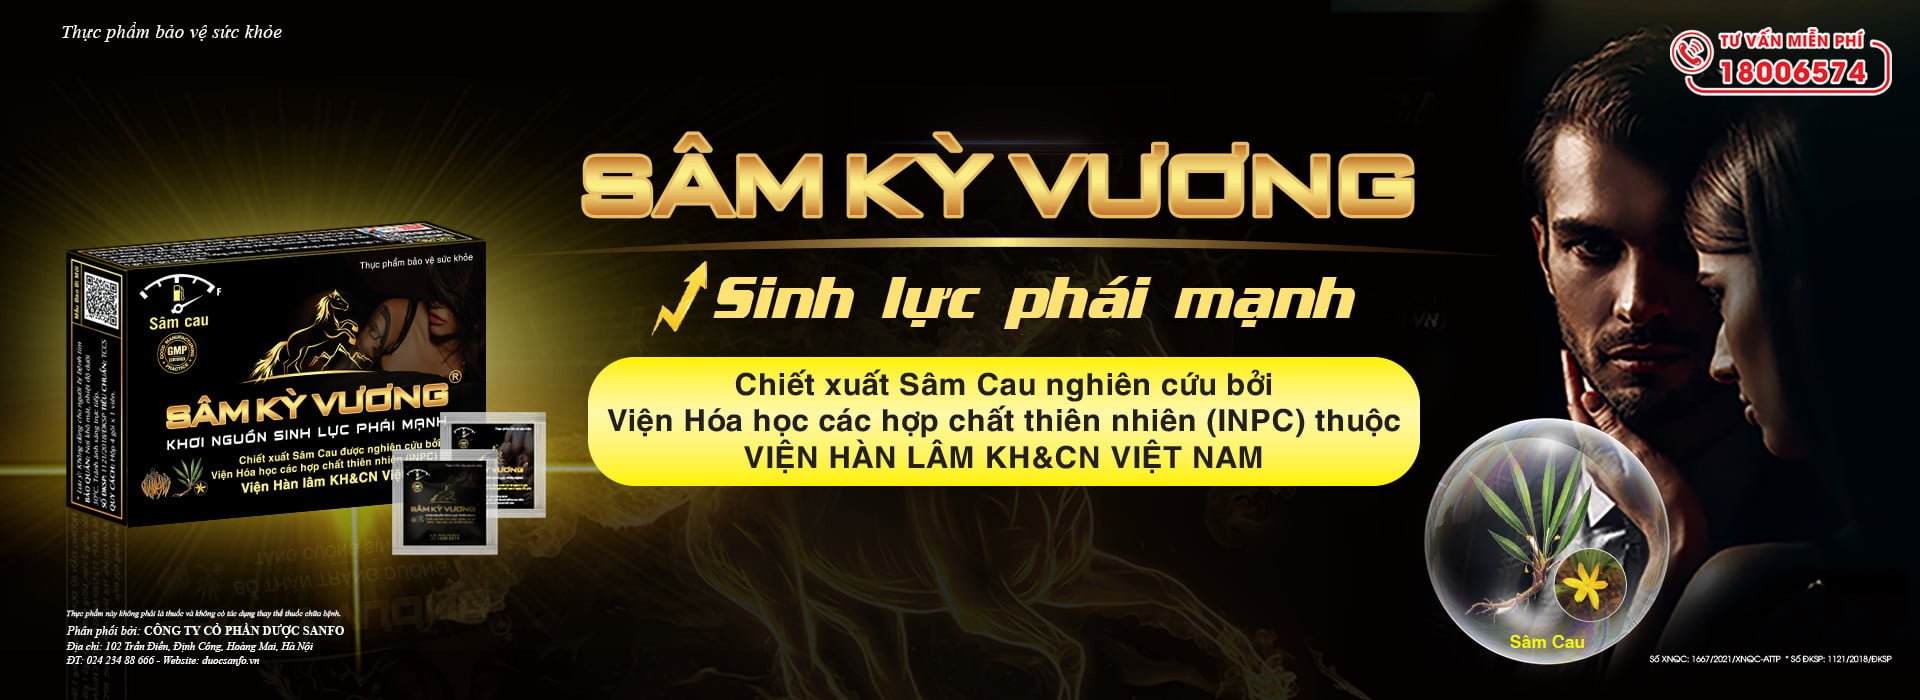 Dân Việt nói về Sâm Kỳ Vương